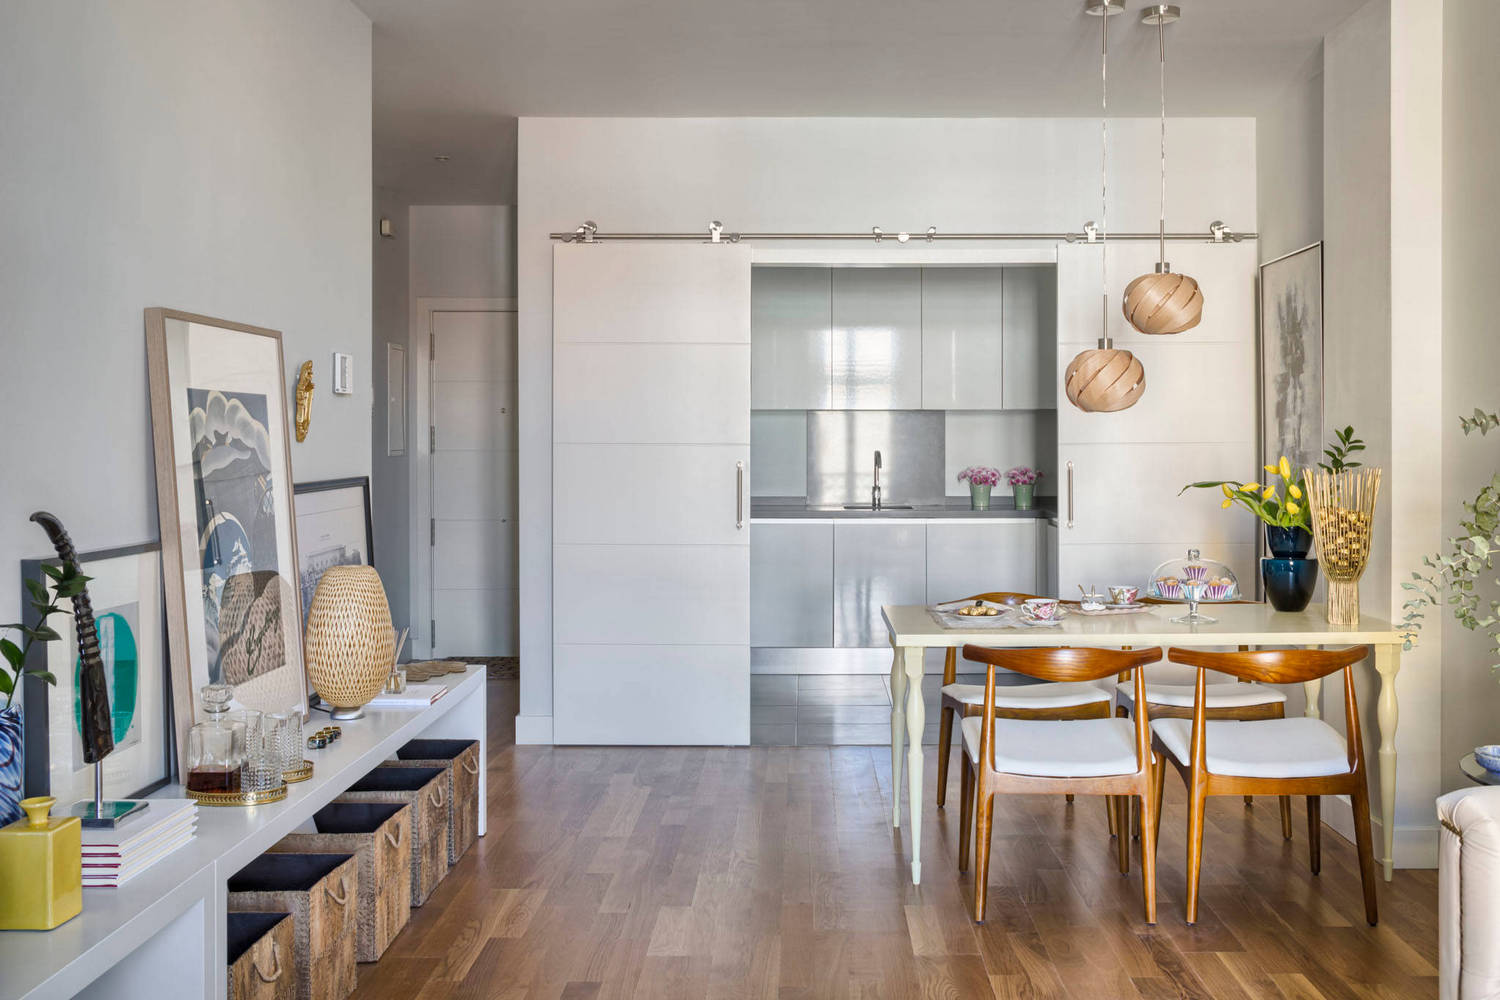 Kétszobás lakás modern nőiességgel - nappali és konyha között helytakarékos tolóajtóval